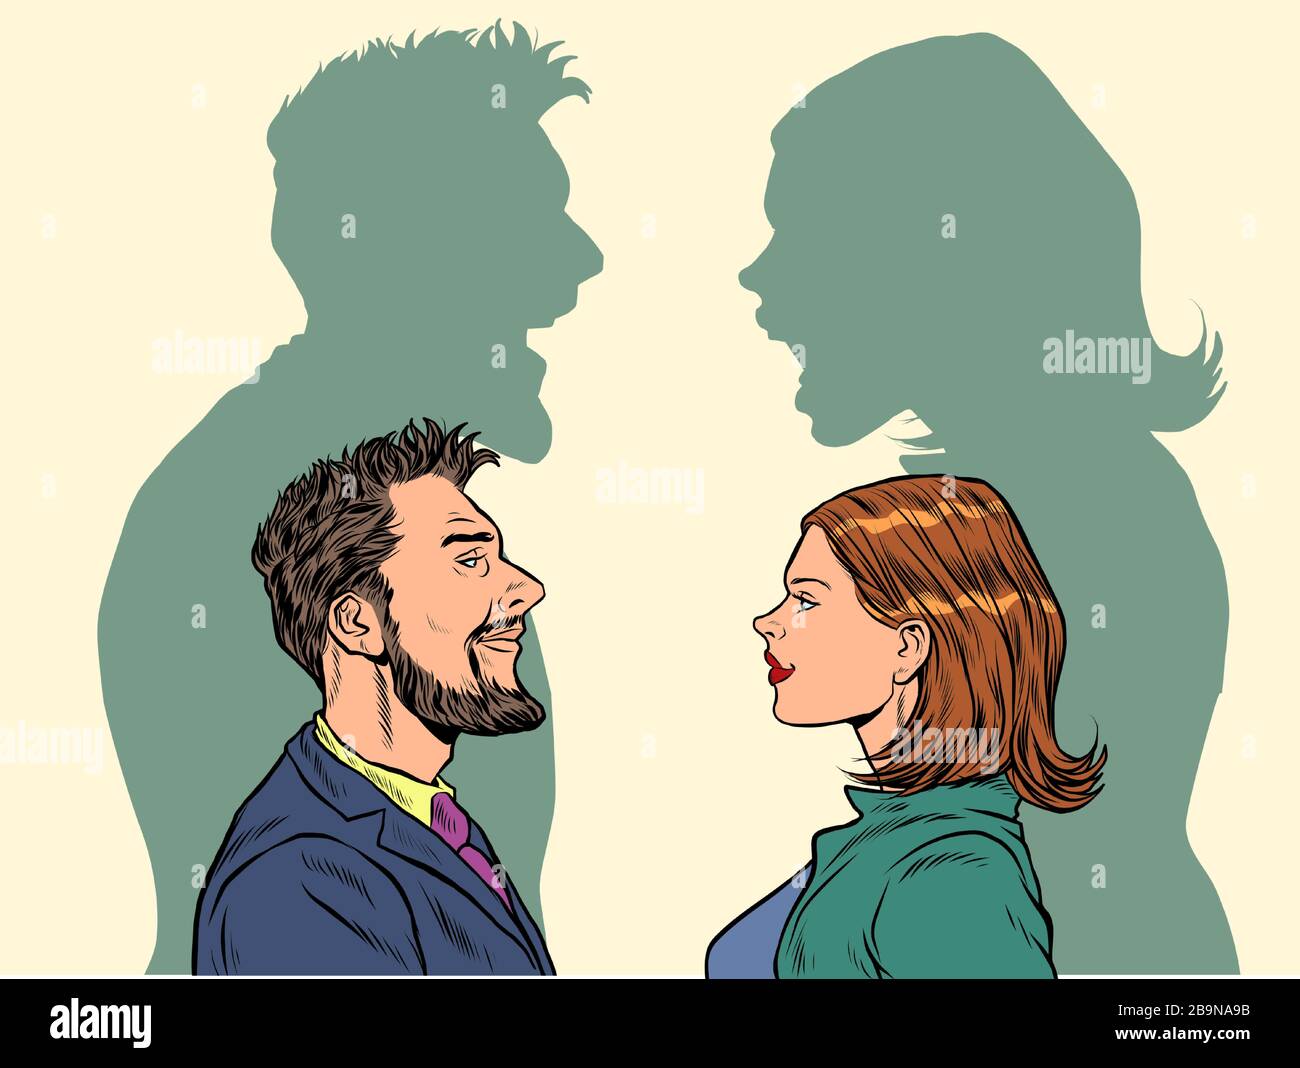 El concepto de conflicto entre hombres y mujeres. Ilustración del Vector